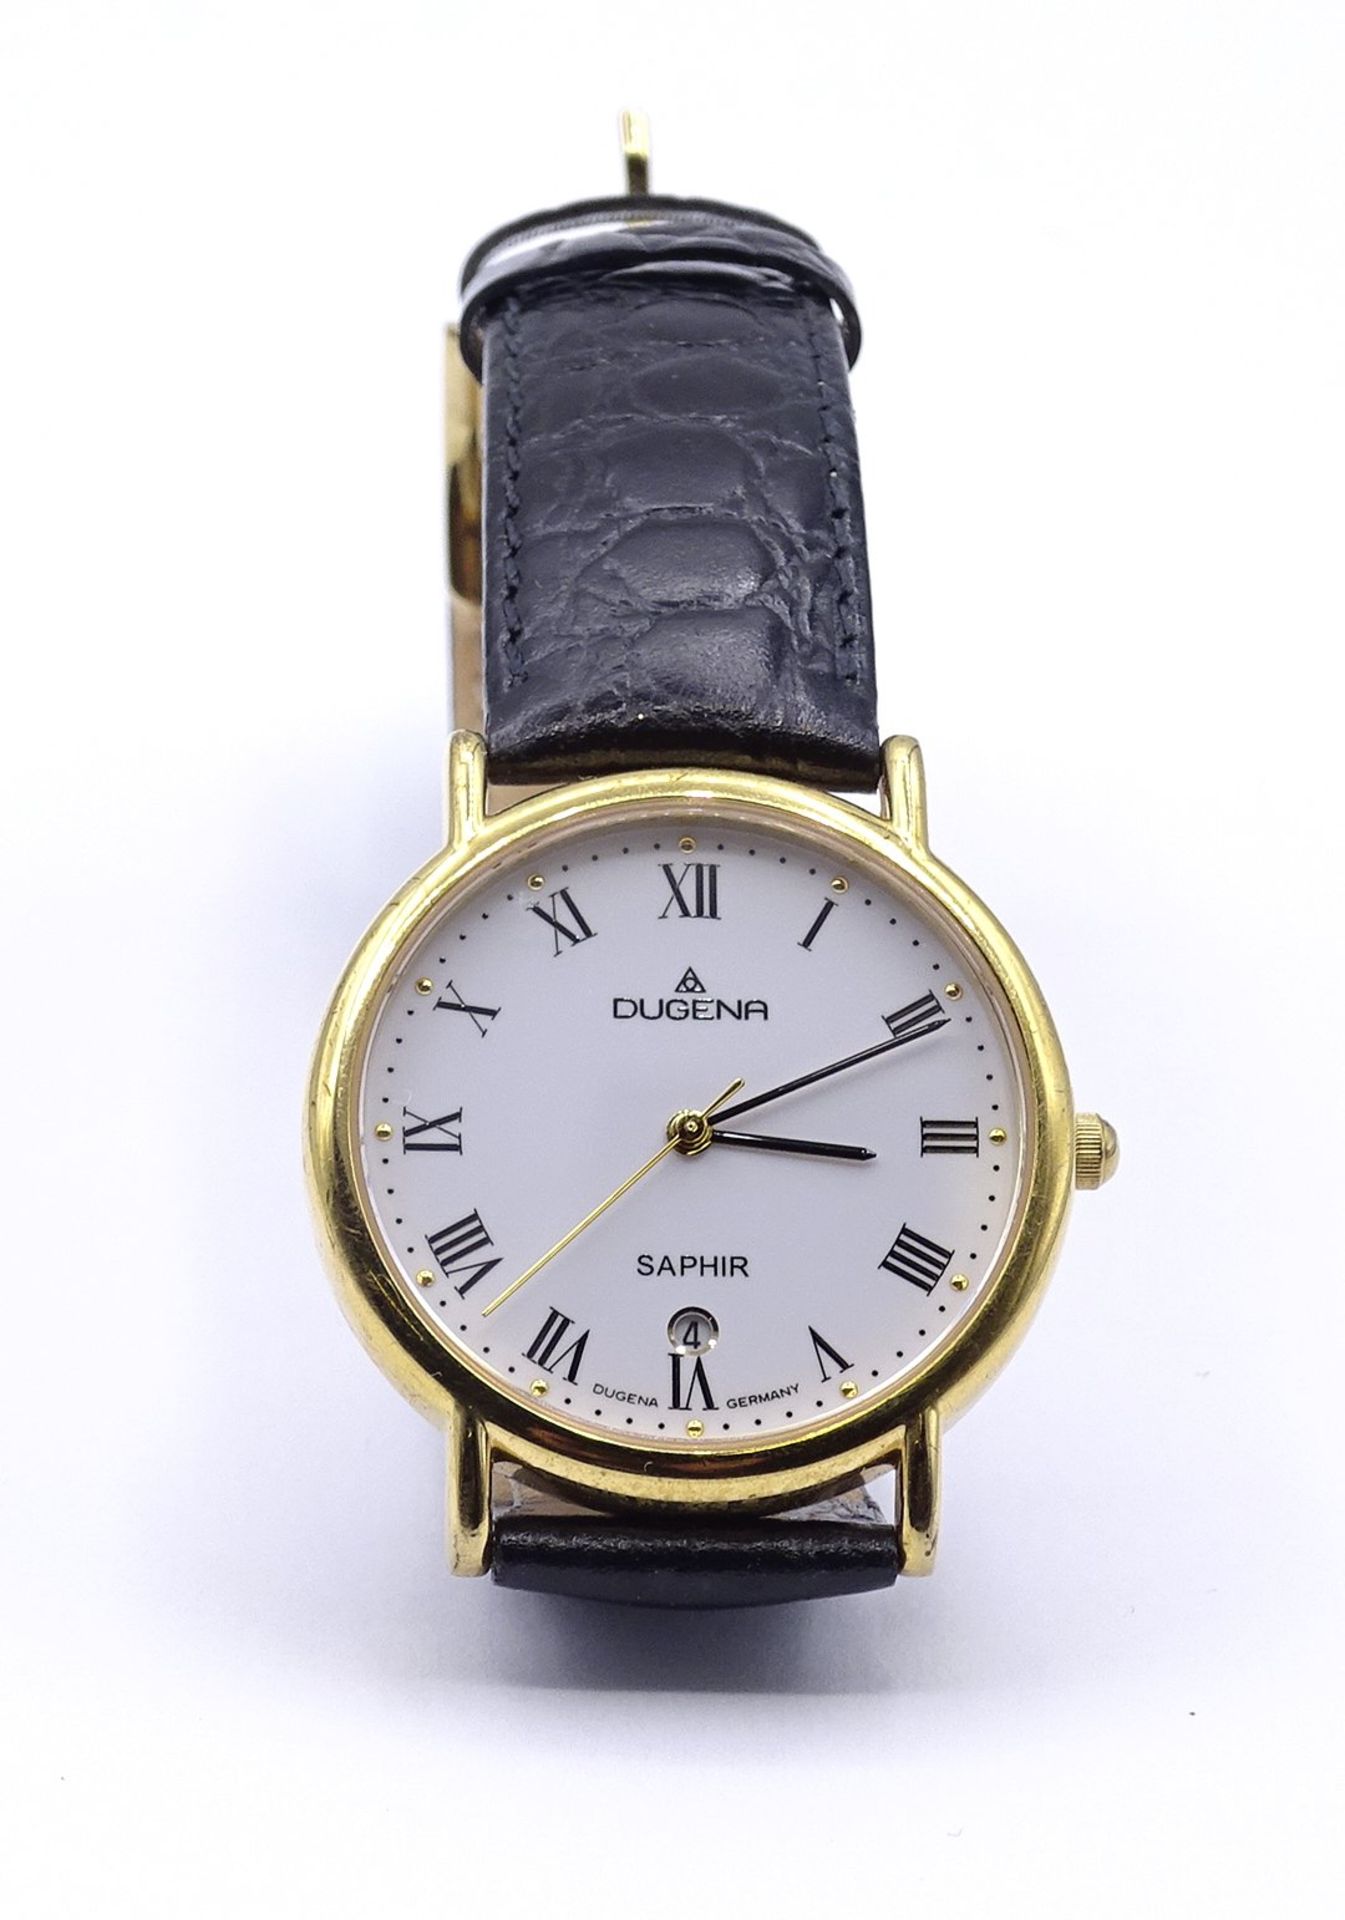 Herren Armbanduhr DUGENA SAPHIR, Quartzwerk, D. 35mm, goldfarbenes Gehäuse, ungetragen, steht - Bild 6 aus 7